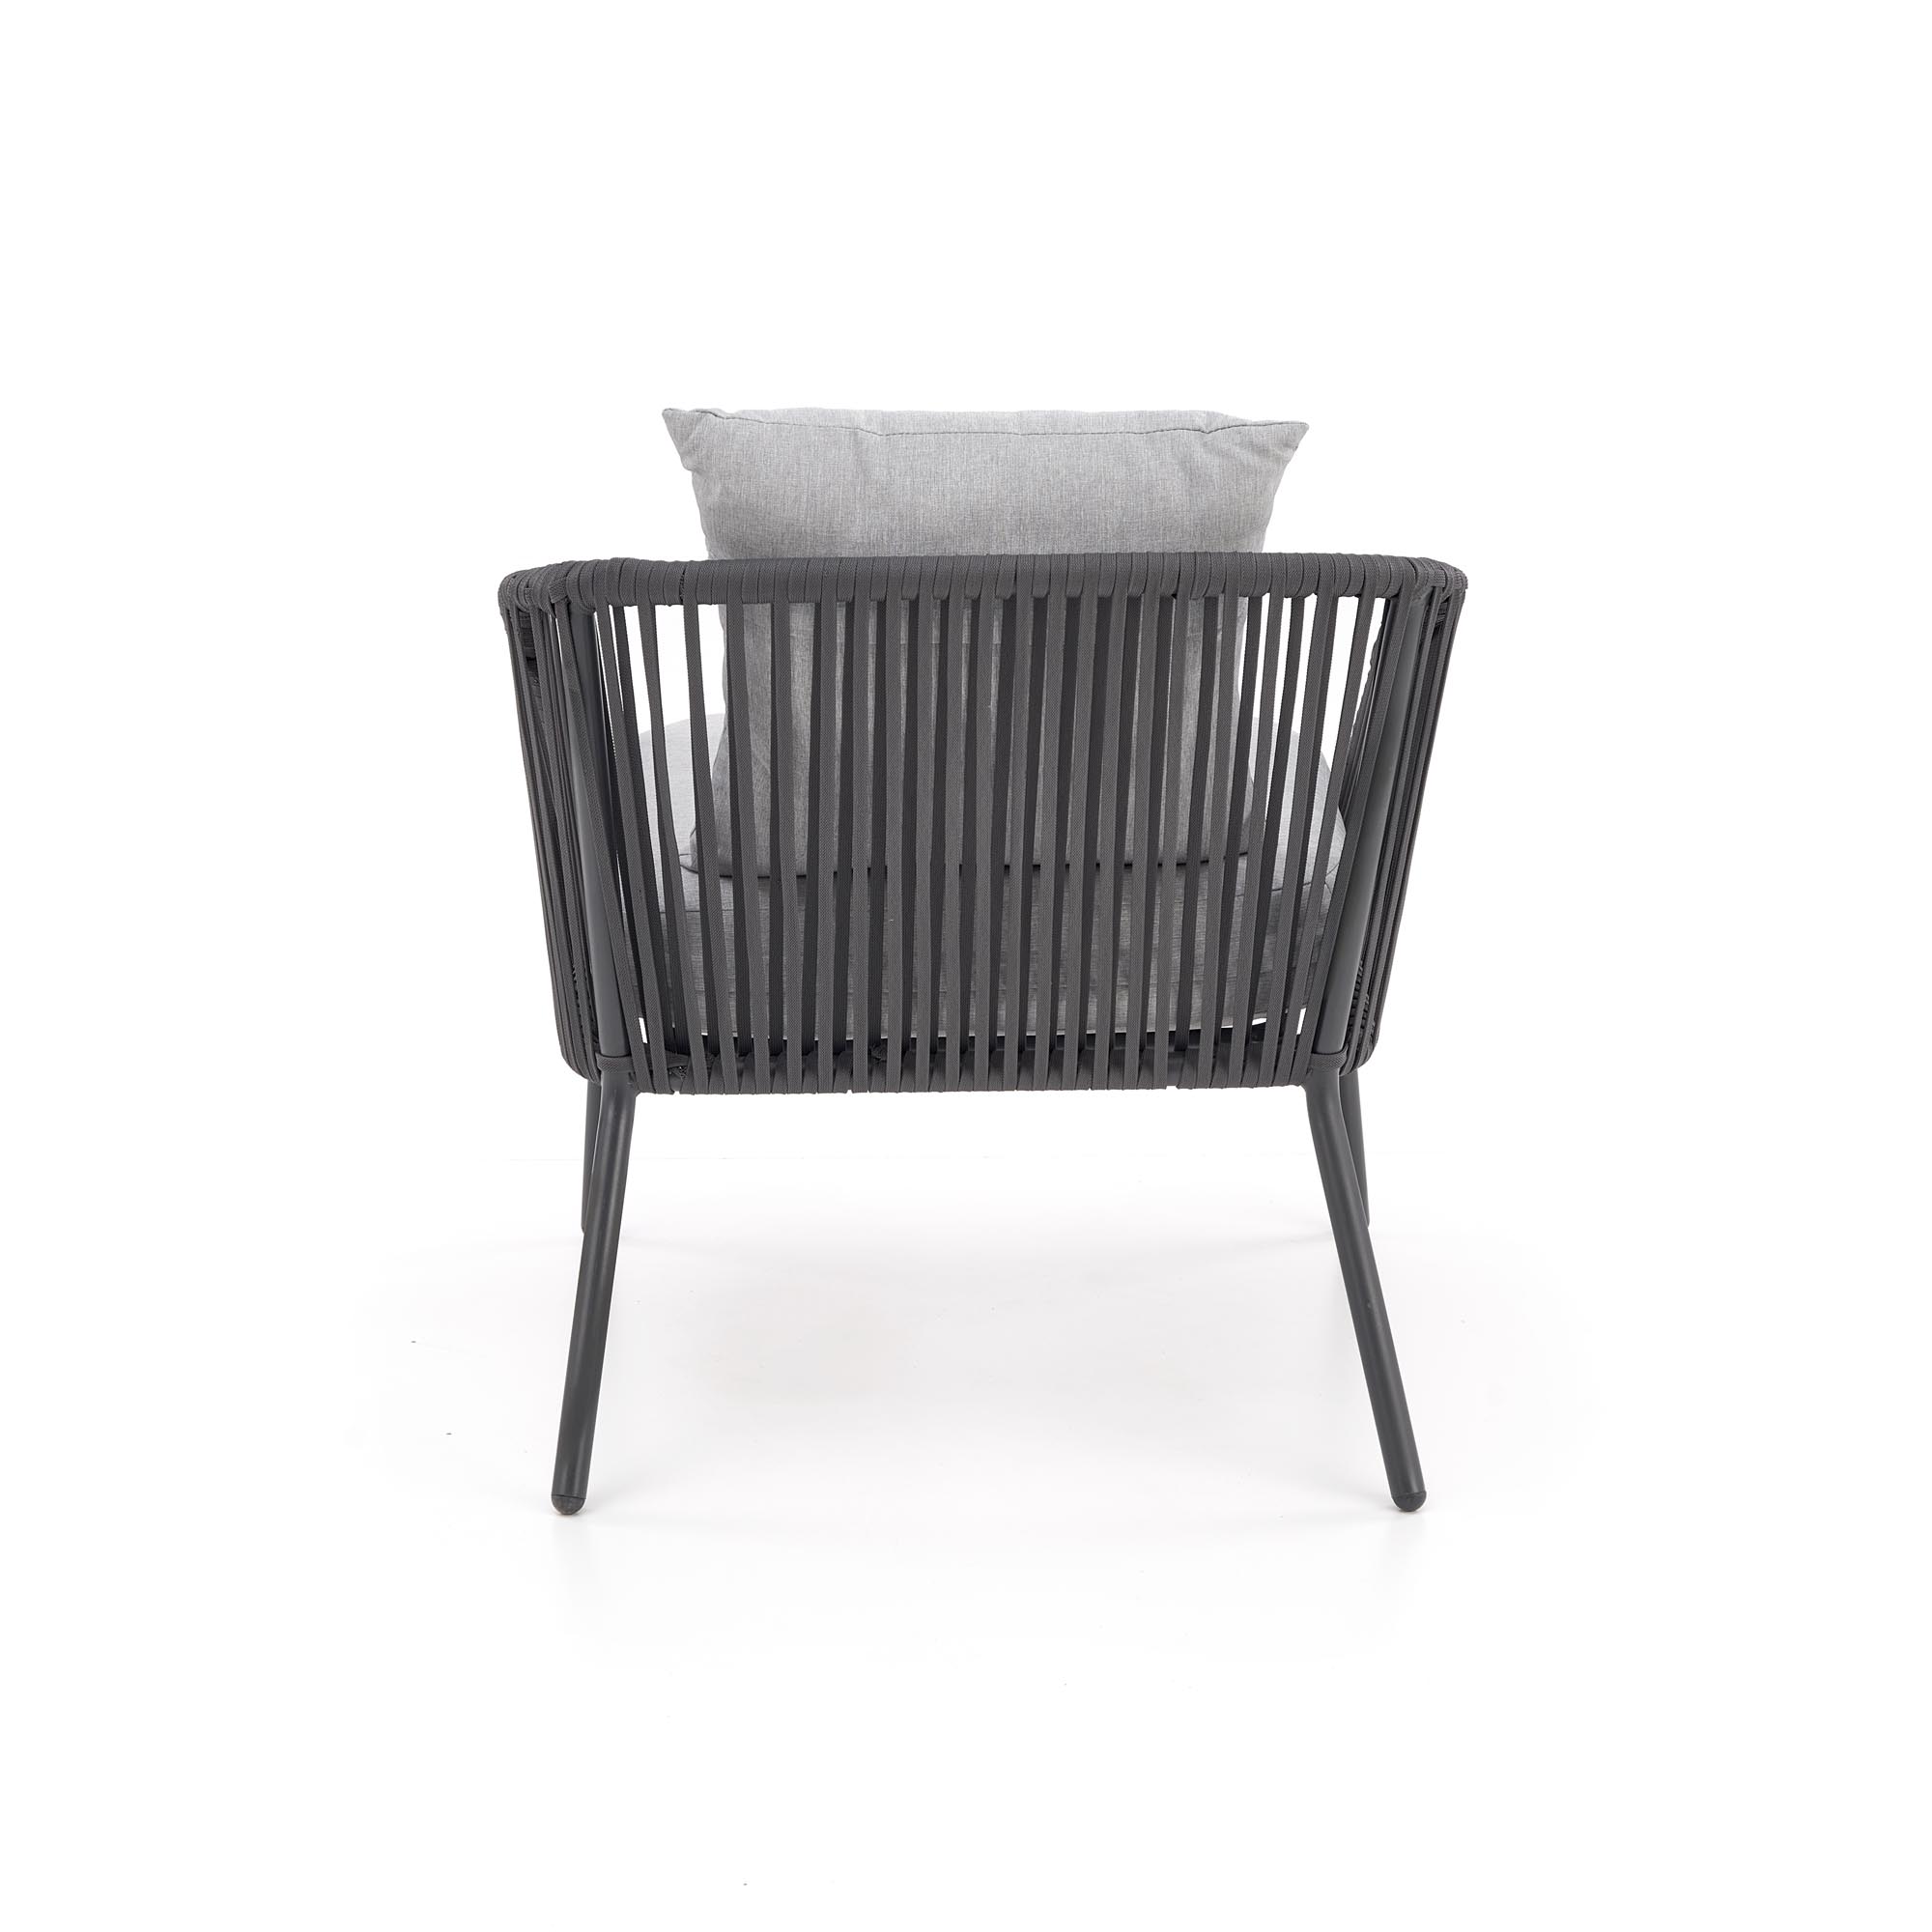 ROCCA Komplet zahradní ( Pohovka + Křeslo 2x + Konferenční stolek ), tmavý popel / jasný popel Komplet nábytku ogrodowych rocca - tmavý popel / jasný popel